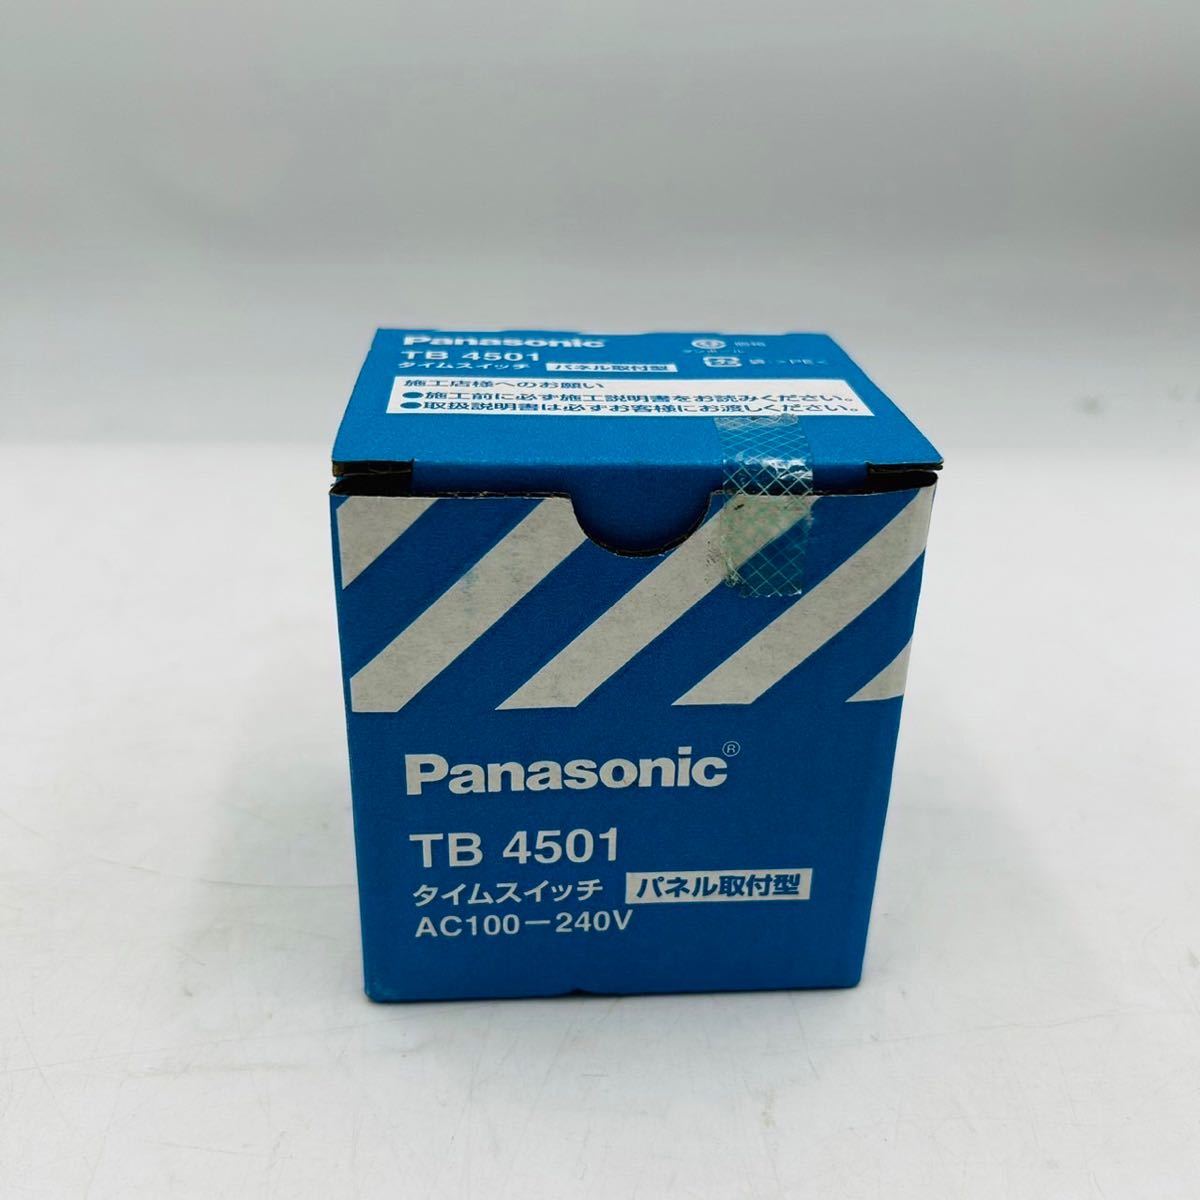 ★ Panasonic パナソニック TB 4501 タイムスイッチ パネル取付型 AC100-240V_画像1